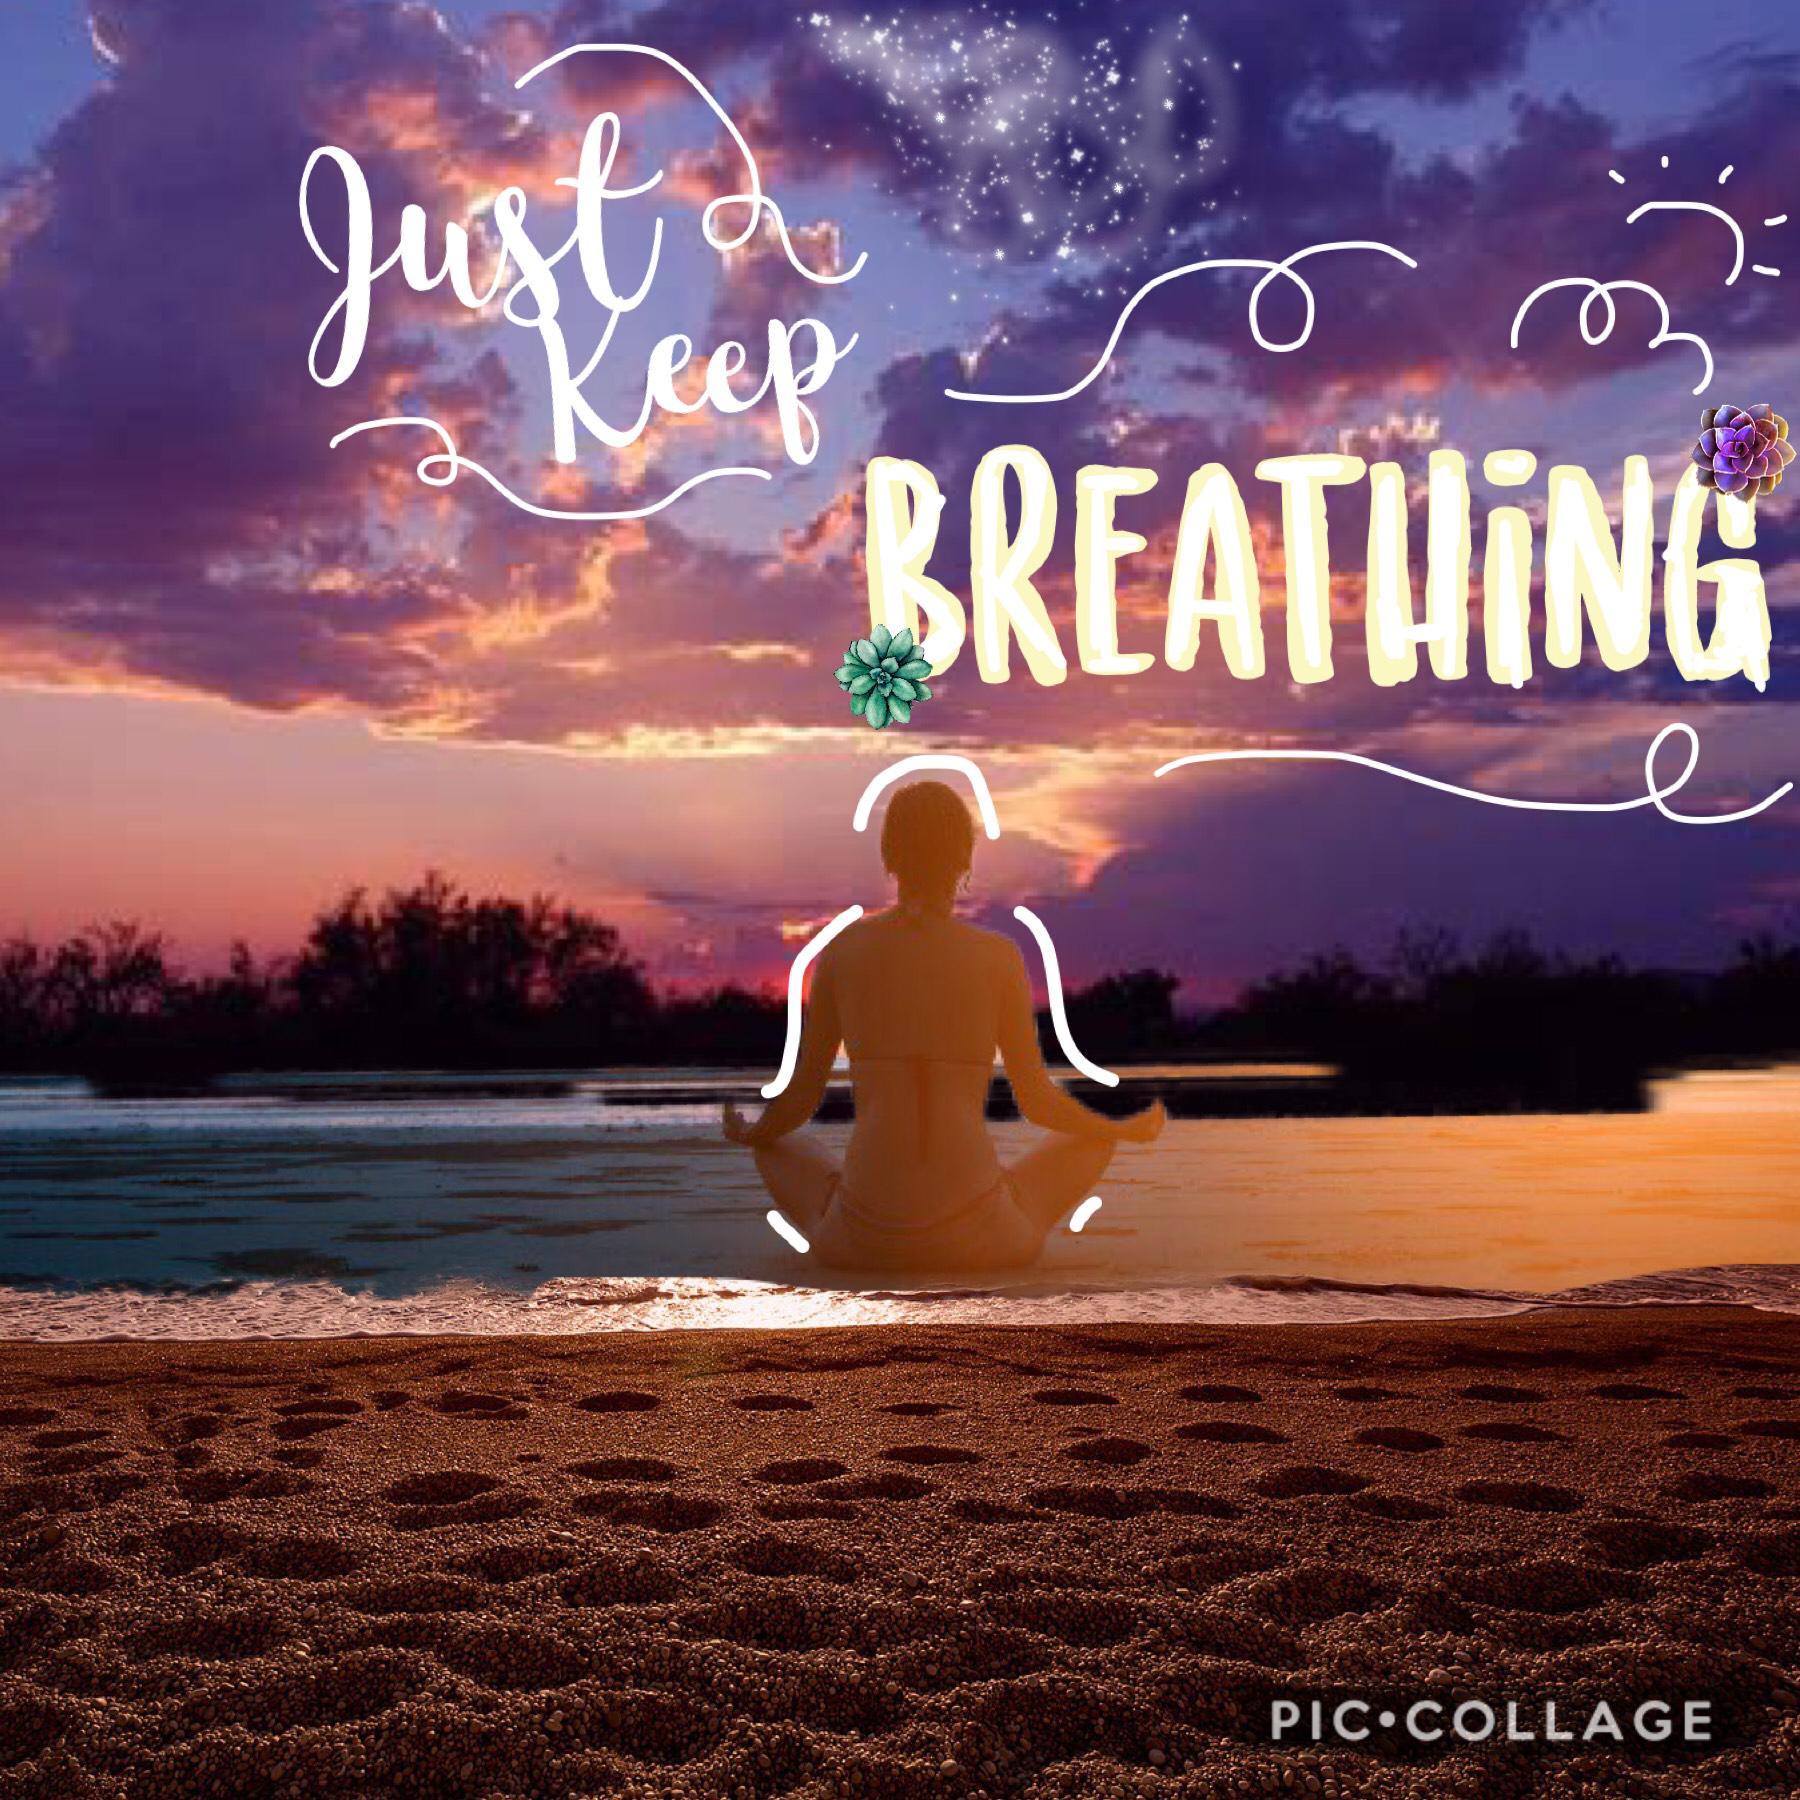 



~ just keep breathin’ ~